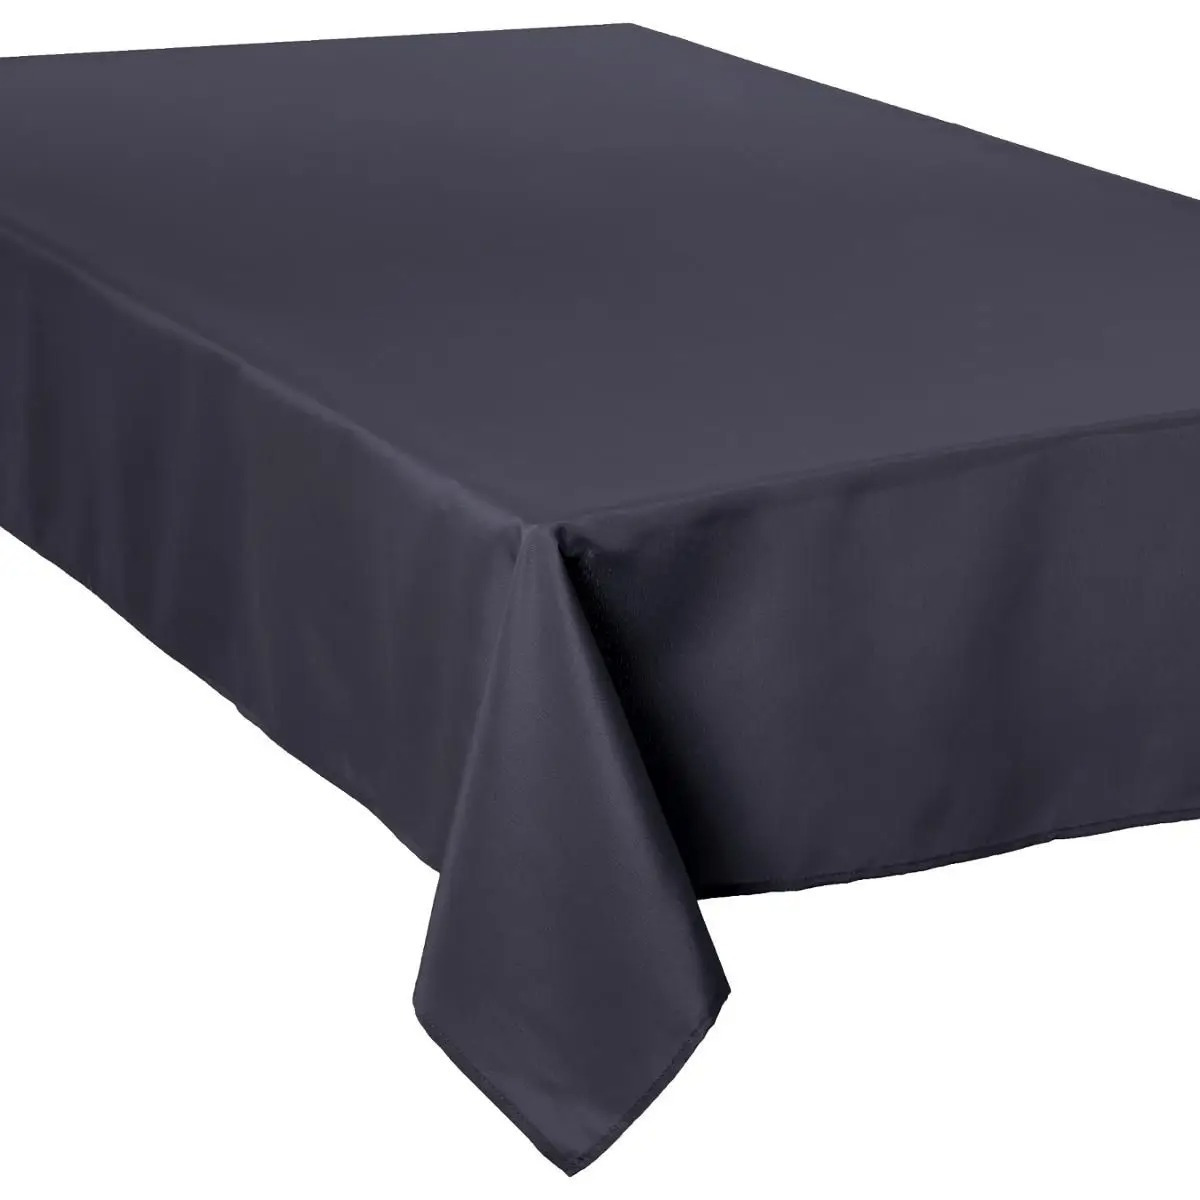 atmosphera Schmutzabweisende Tischdecke, rechteckiges Tischtuch, elegante Tischdecke für das Wohnzimmer - Farbe anthrazit, 300 x 150 cm